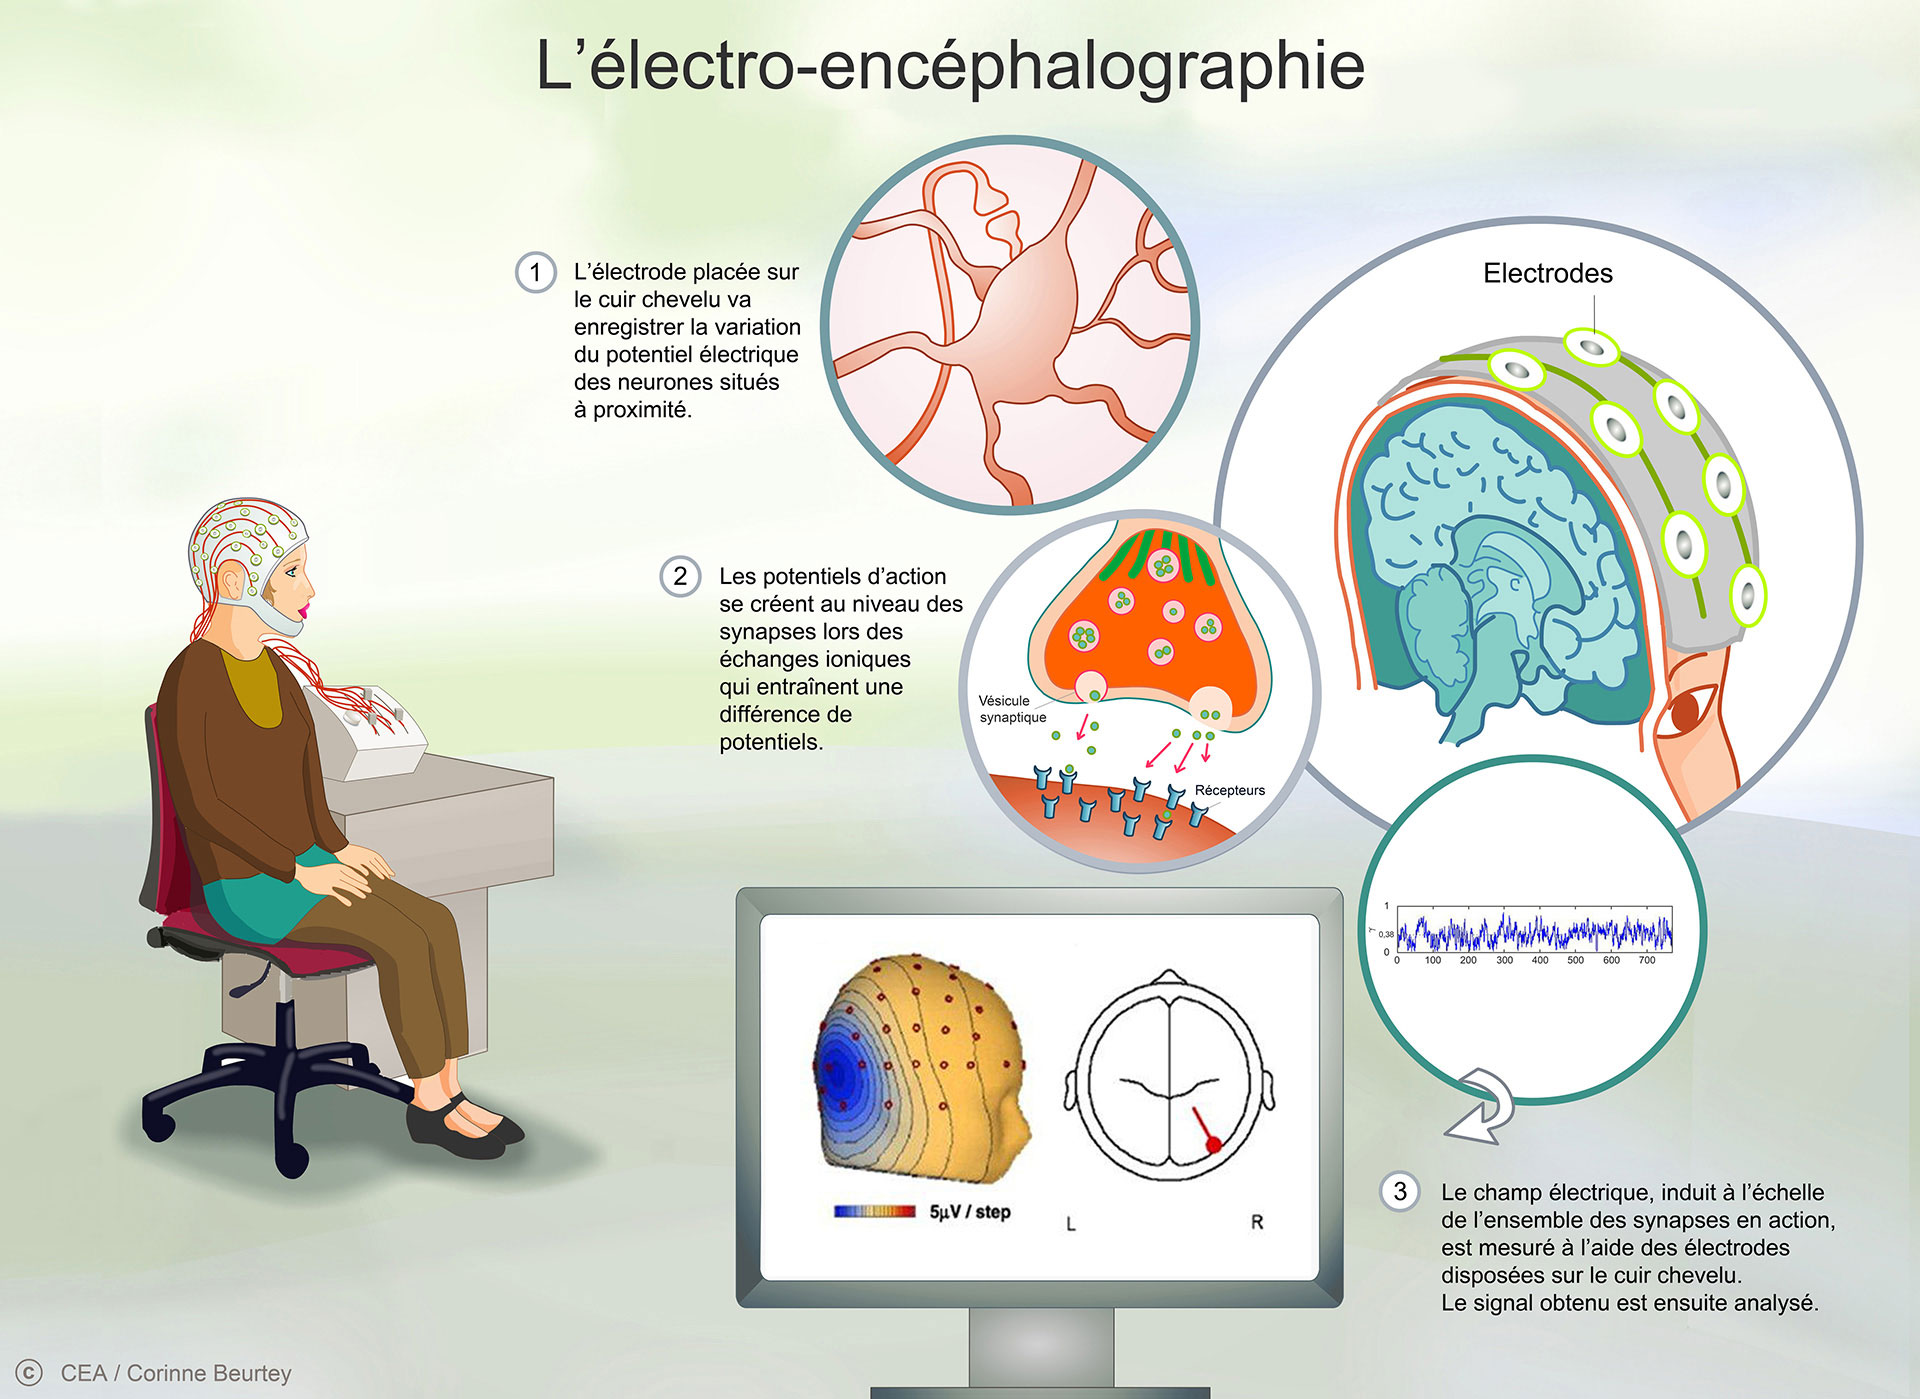 Le principe de l'électro-encéphalographie